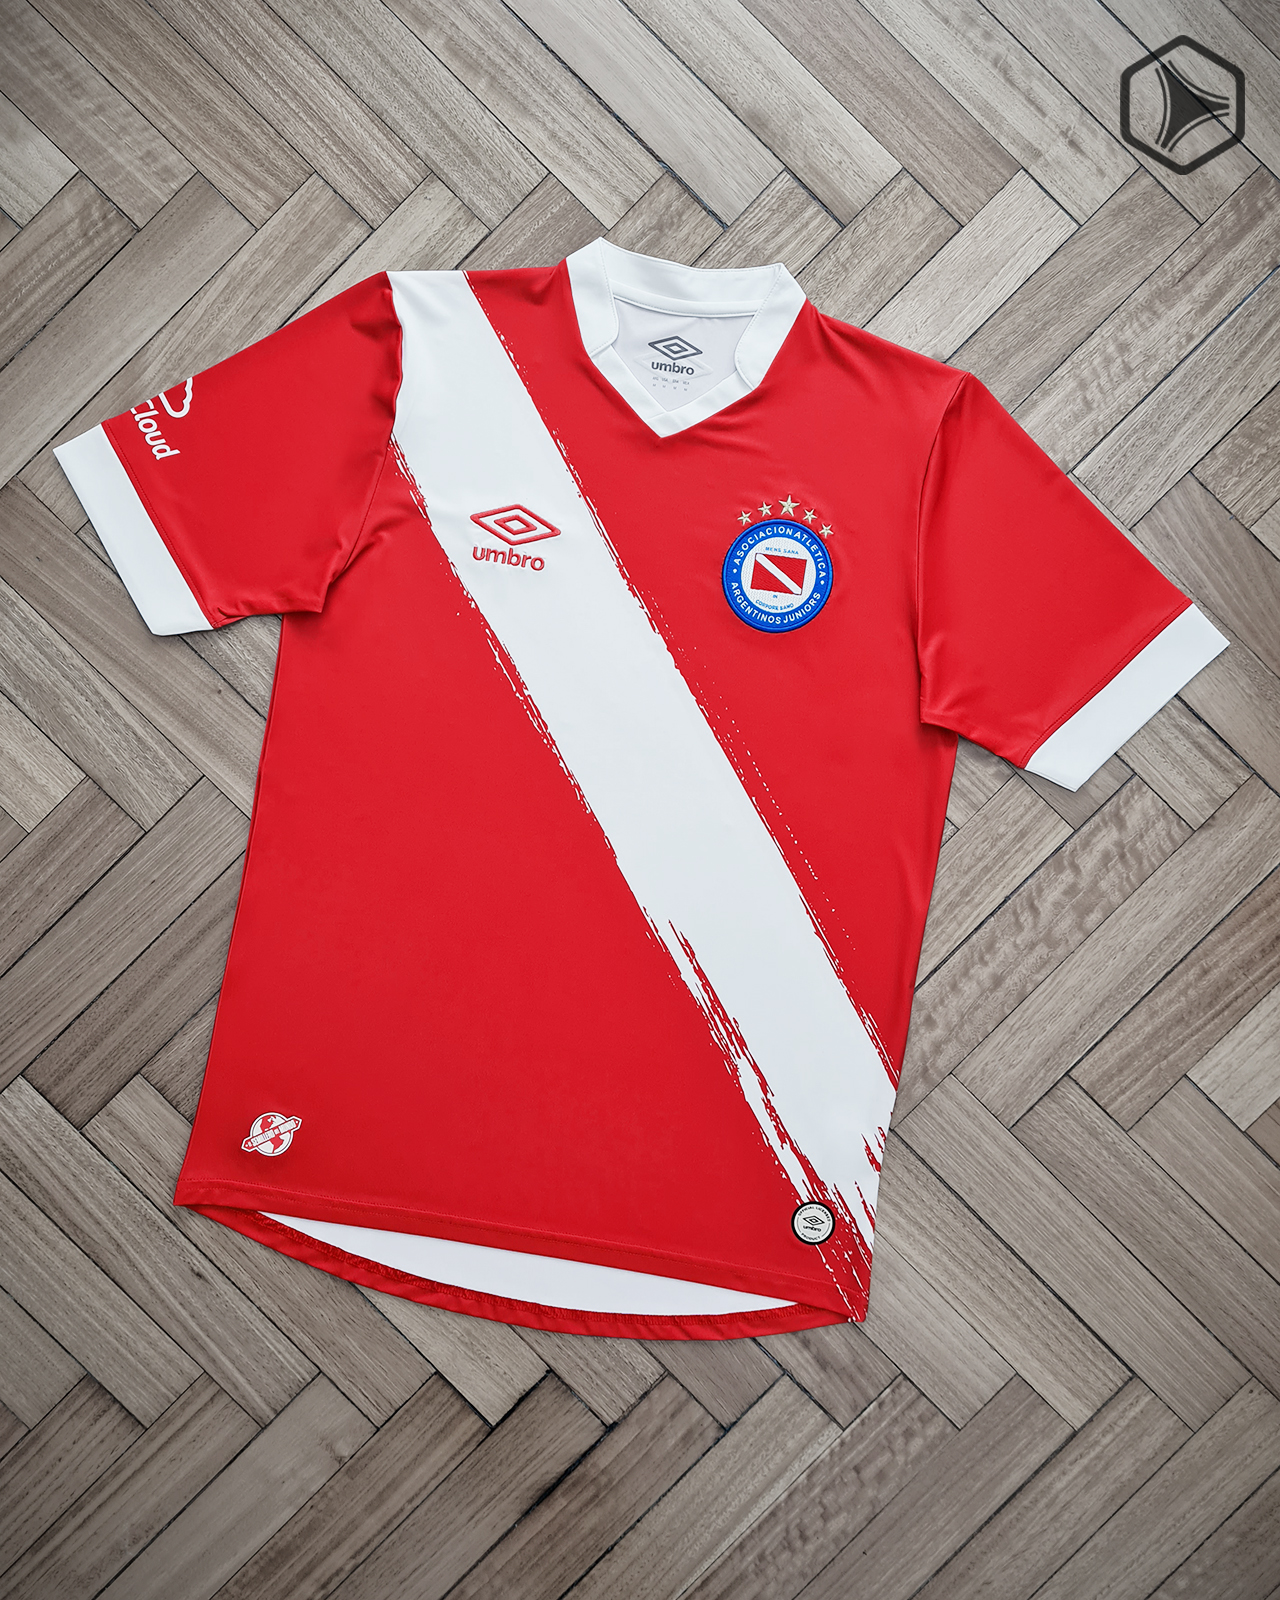 Camisetas Umbro de Argentinos Juniors 2021 2022 Titular